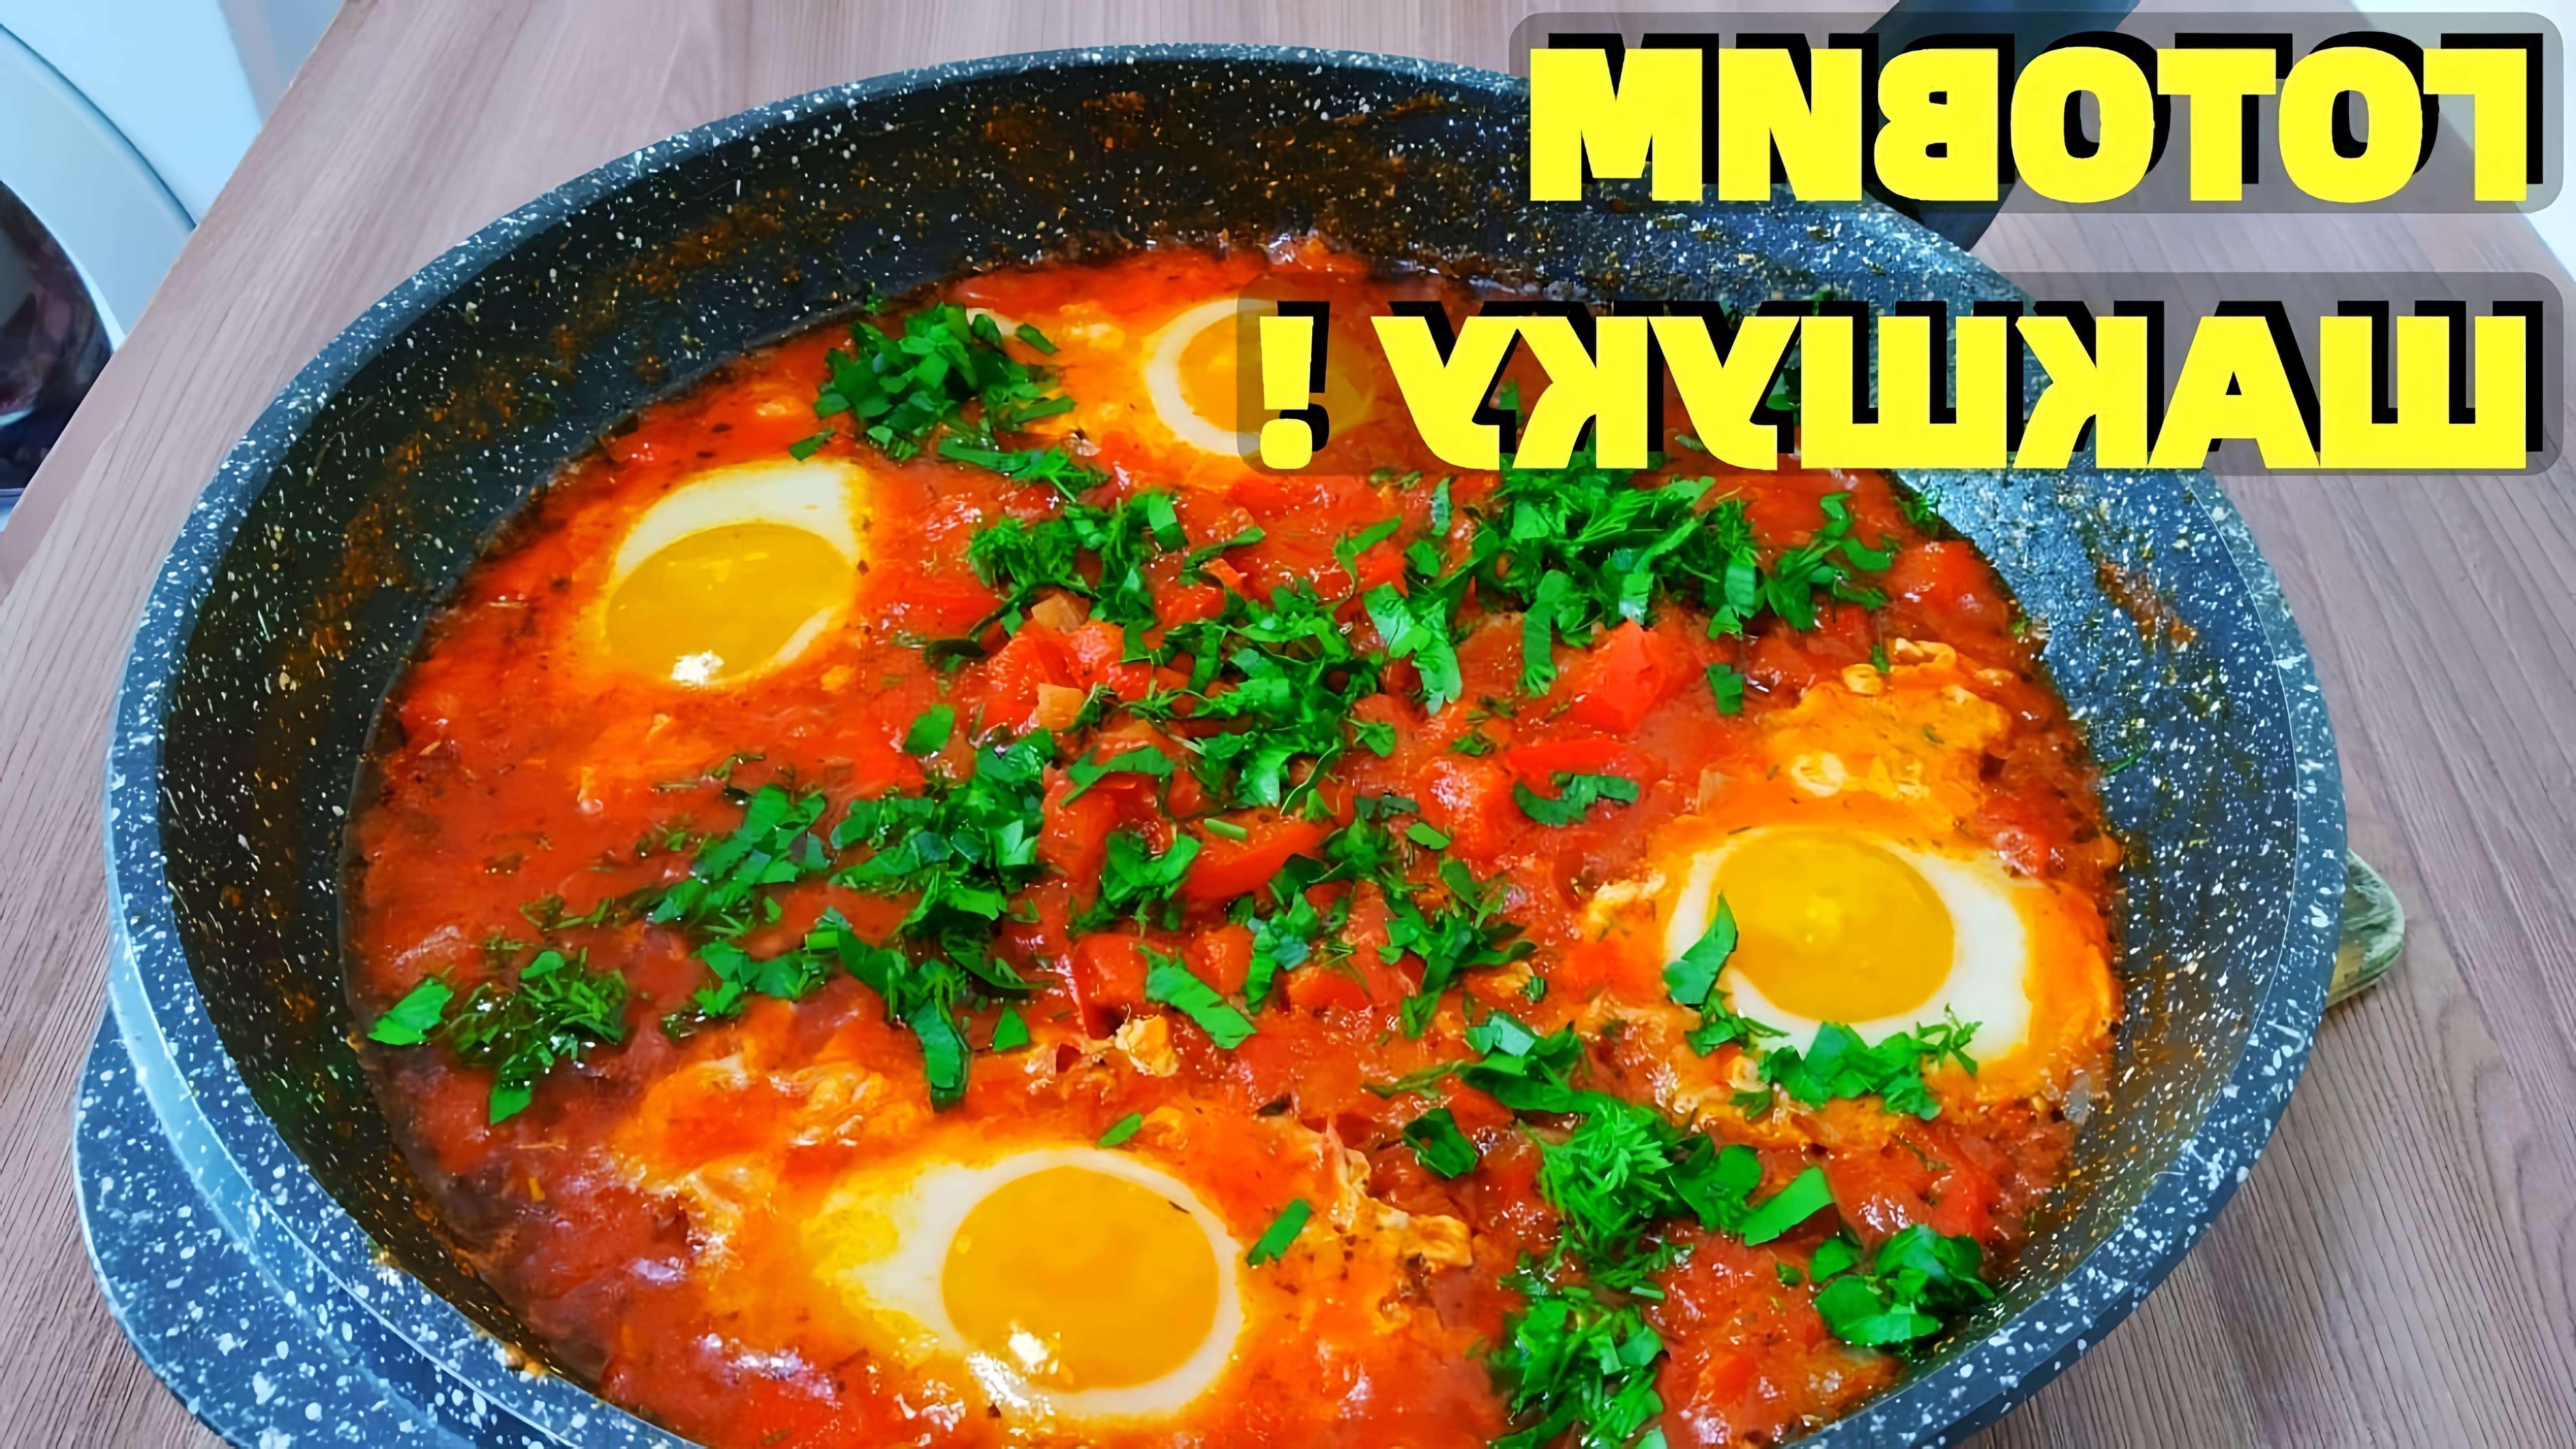 В этом видео рассказывается о приготовлении шакшуки - блюда из яиц, жареных с соусом из помидоров, острого перца, лука и приправ